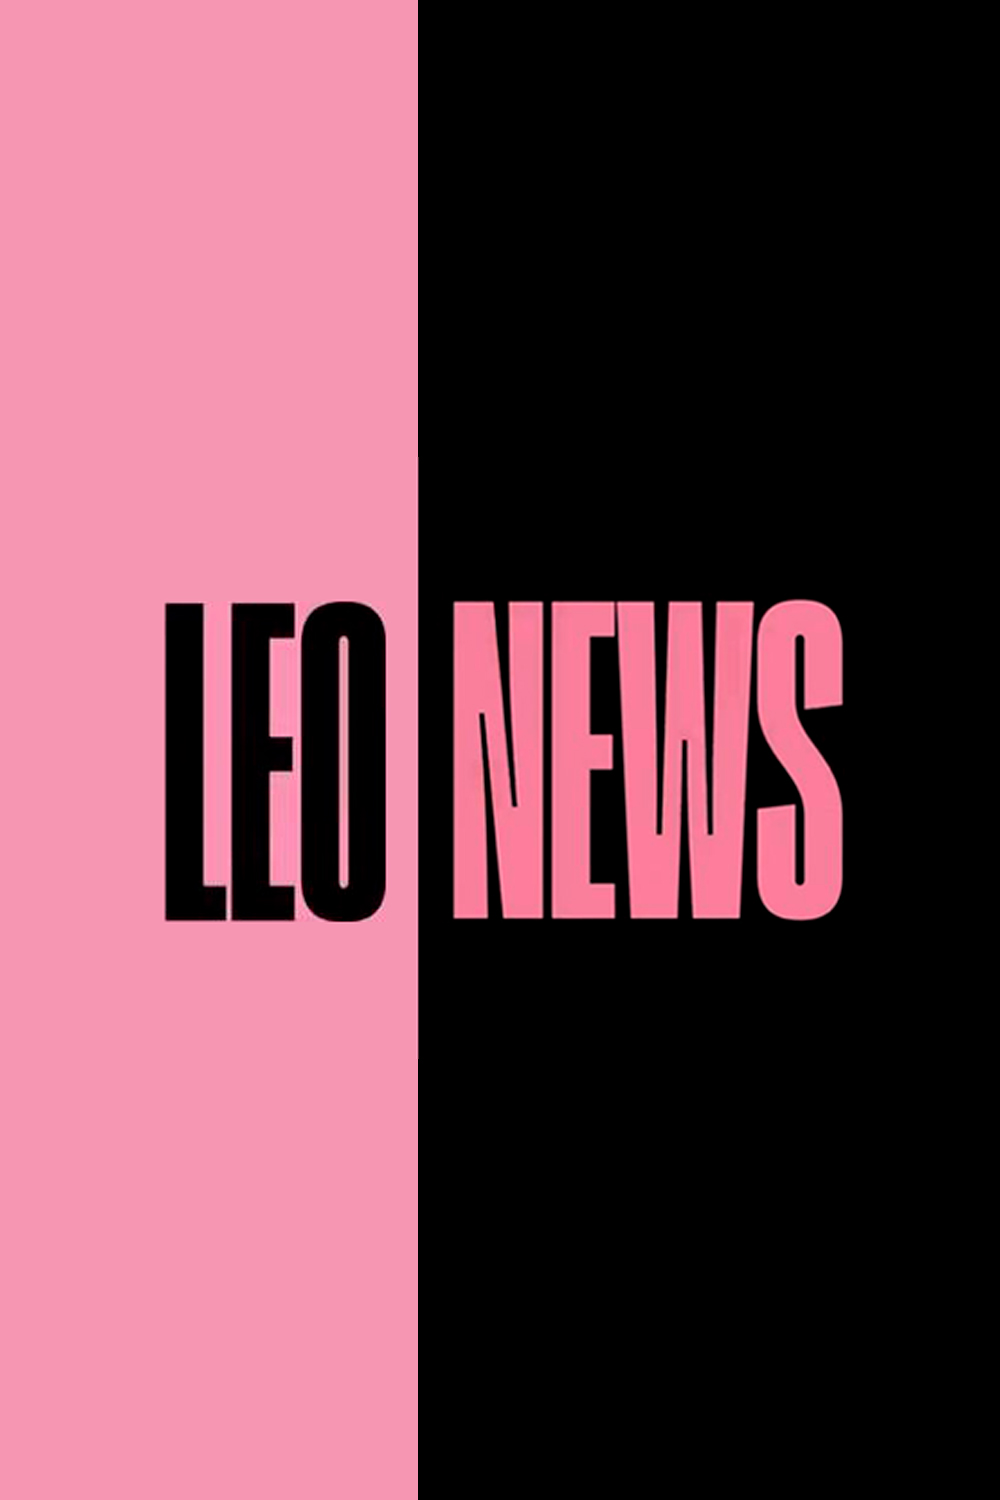 LEO News